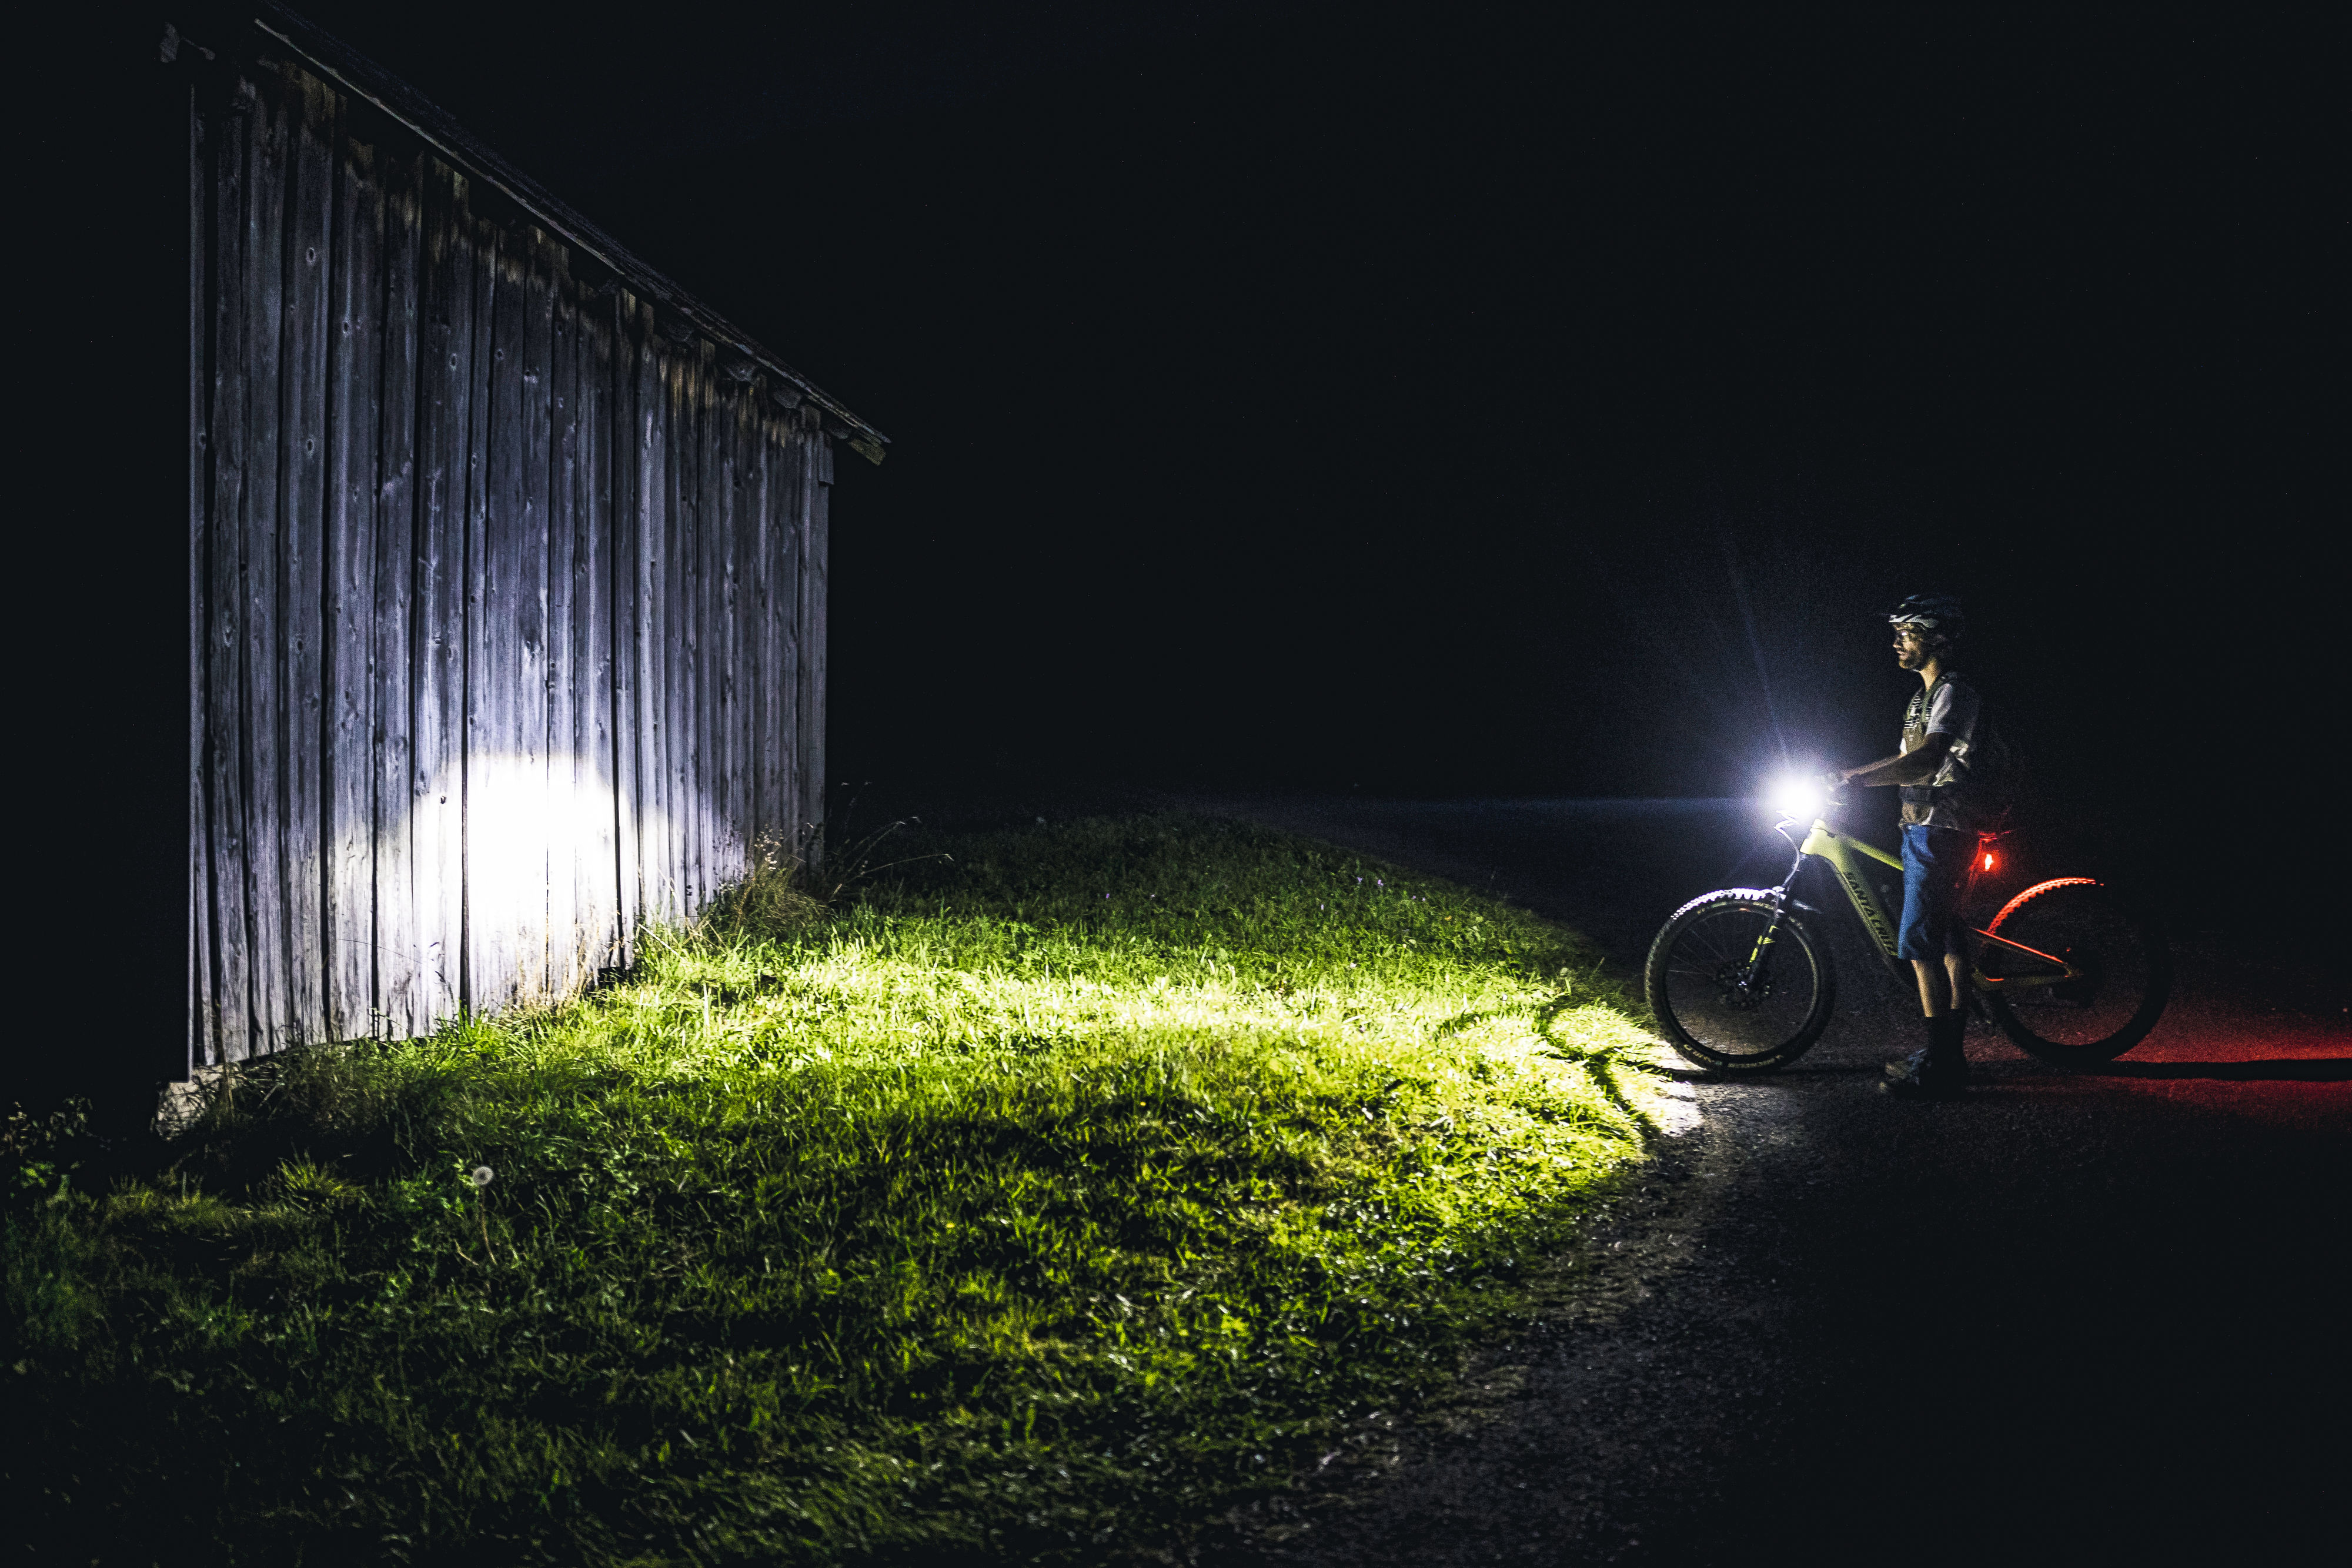 Fahrradbeleuchtung: Welche Lampen sind erlaubt?